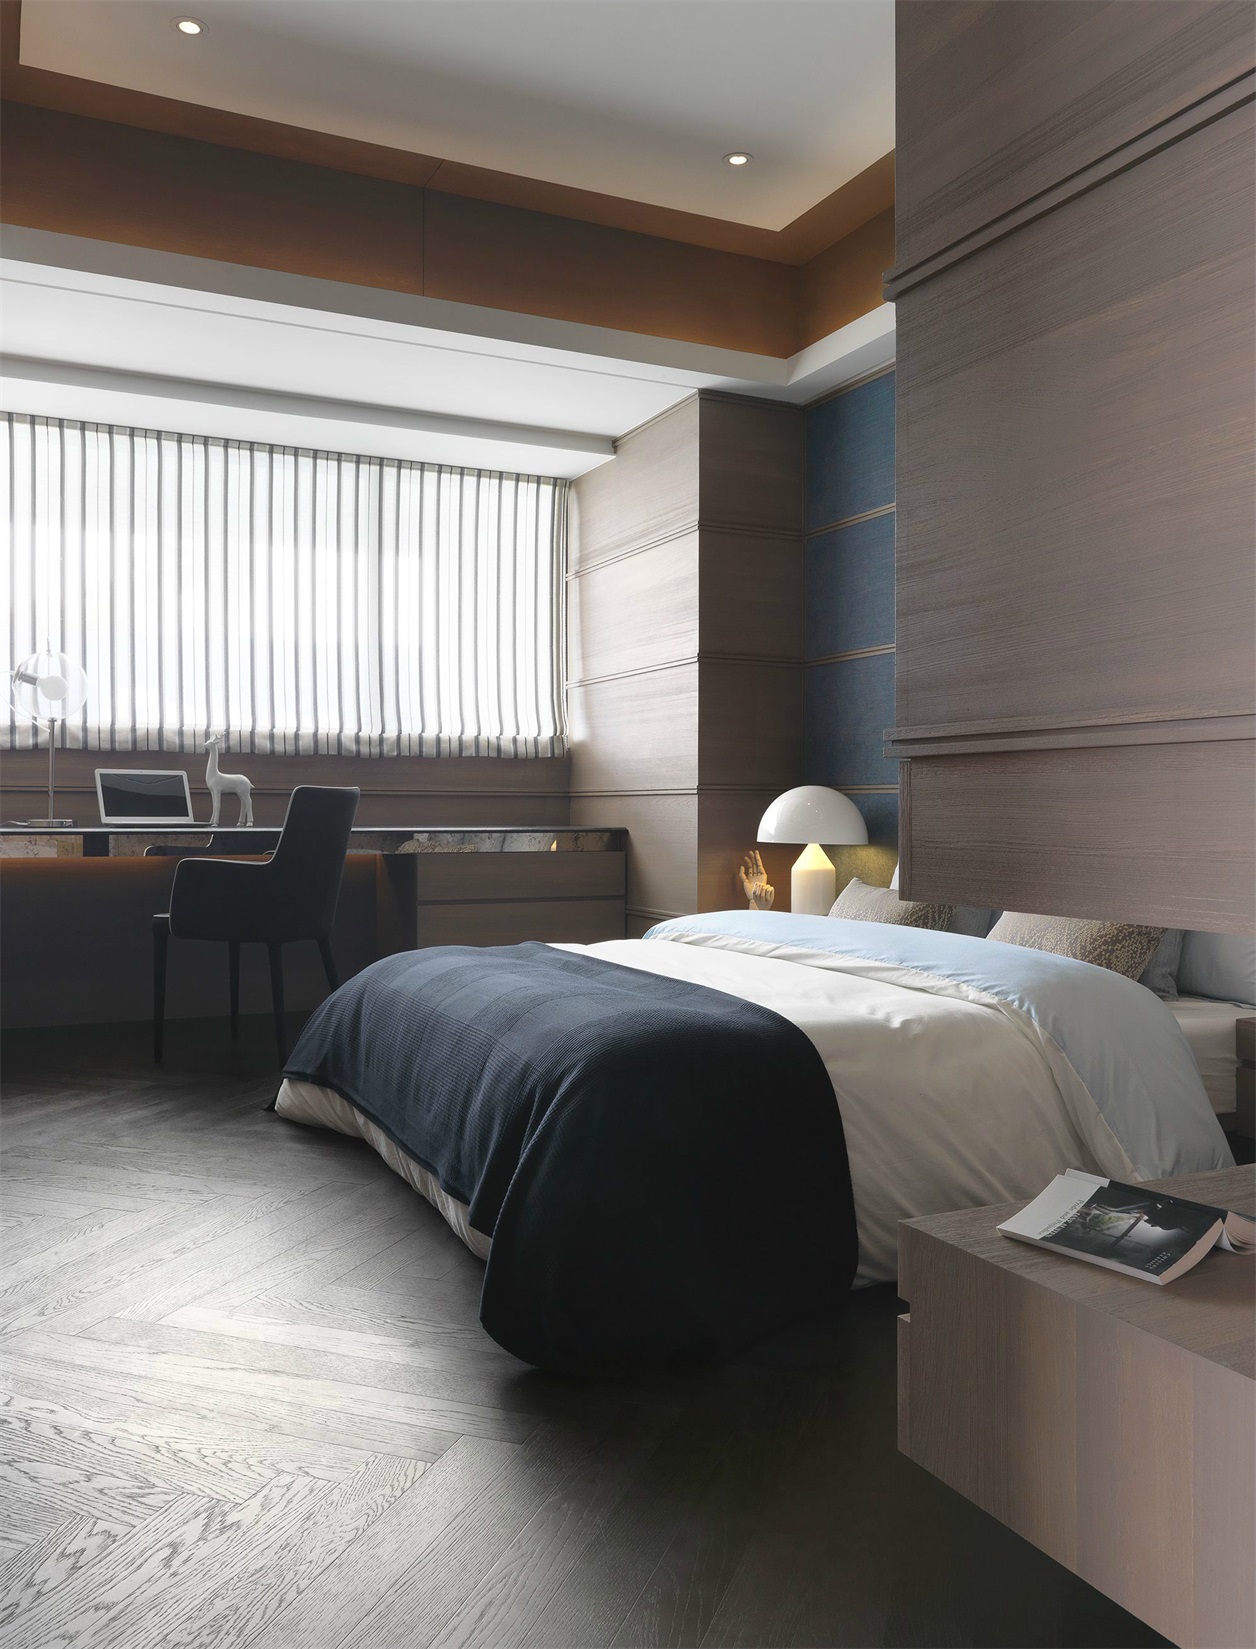 侧卧墙面全使用木板材料打造，素色的床品呈现高级感，室内动线设计巧妙。